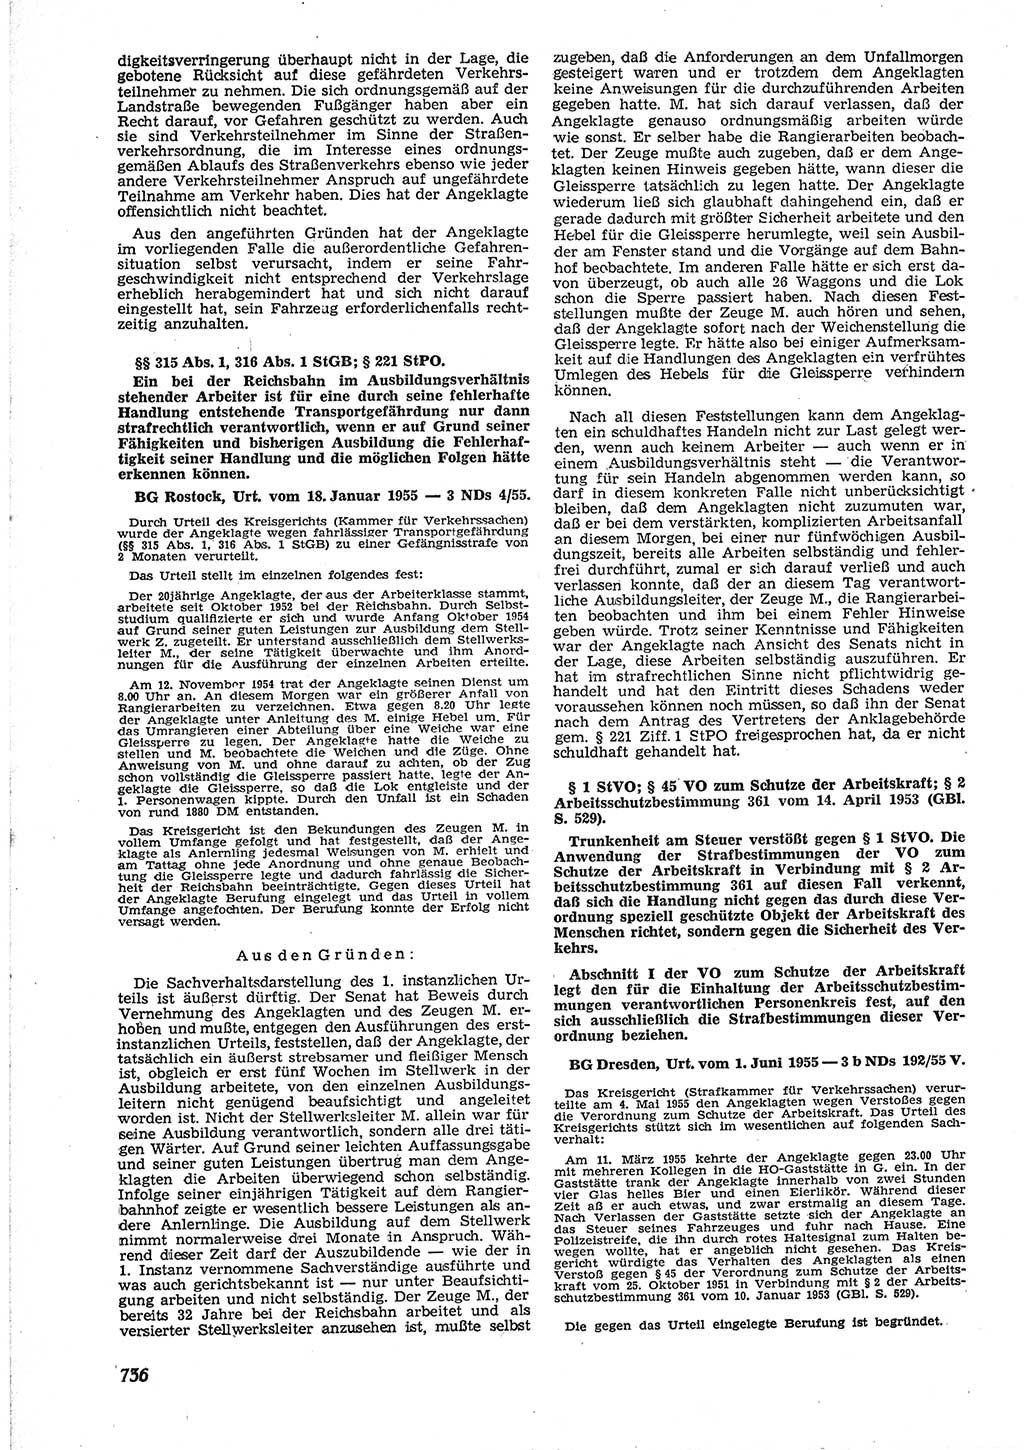 Neue Justiz (NJ), Zeitschrift für Recht und Rechtswissenschaft [Deutsche Demokratische Republik (DDR)], 9. Jahrgang 1955, Seite 736 (NJ DDR 1955, S. 736)